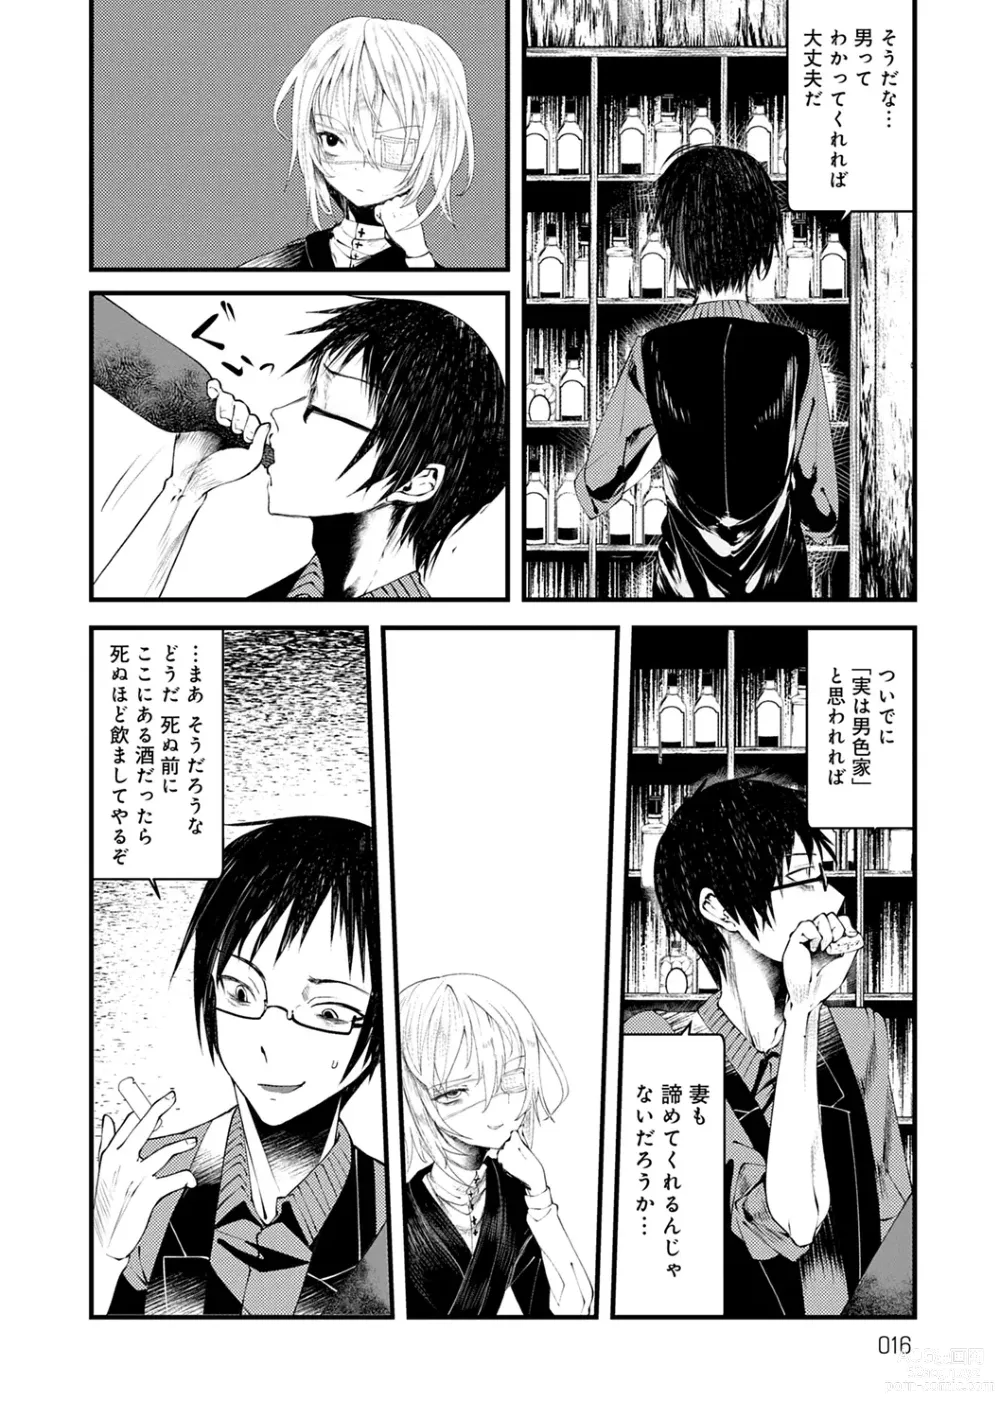 Page 16 of manga Kaiso Ikkenchou -Shonen Kaiki Inwashuu-